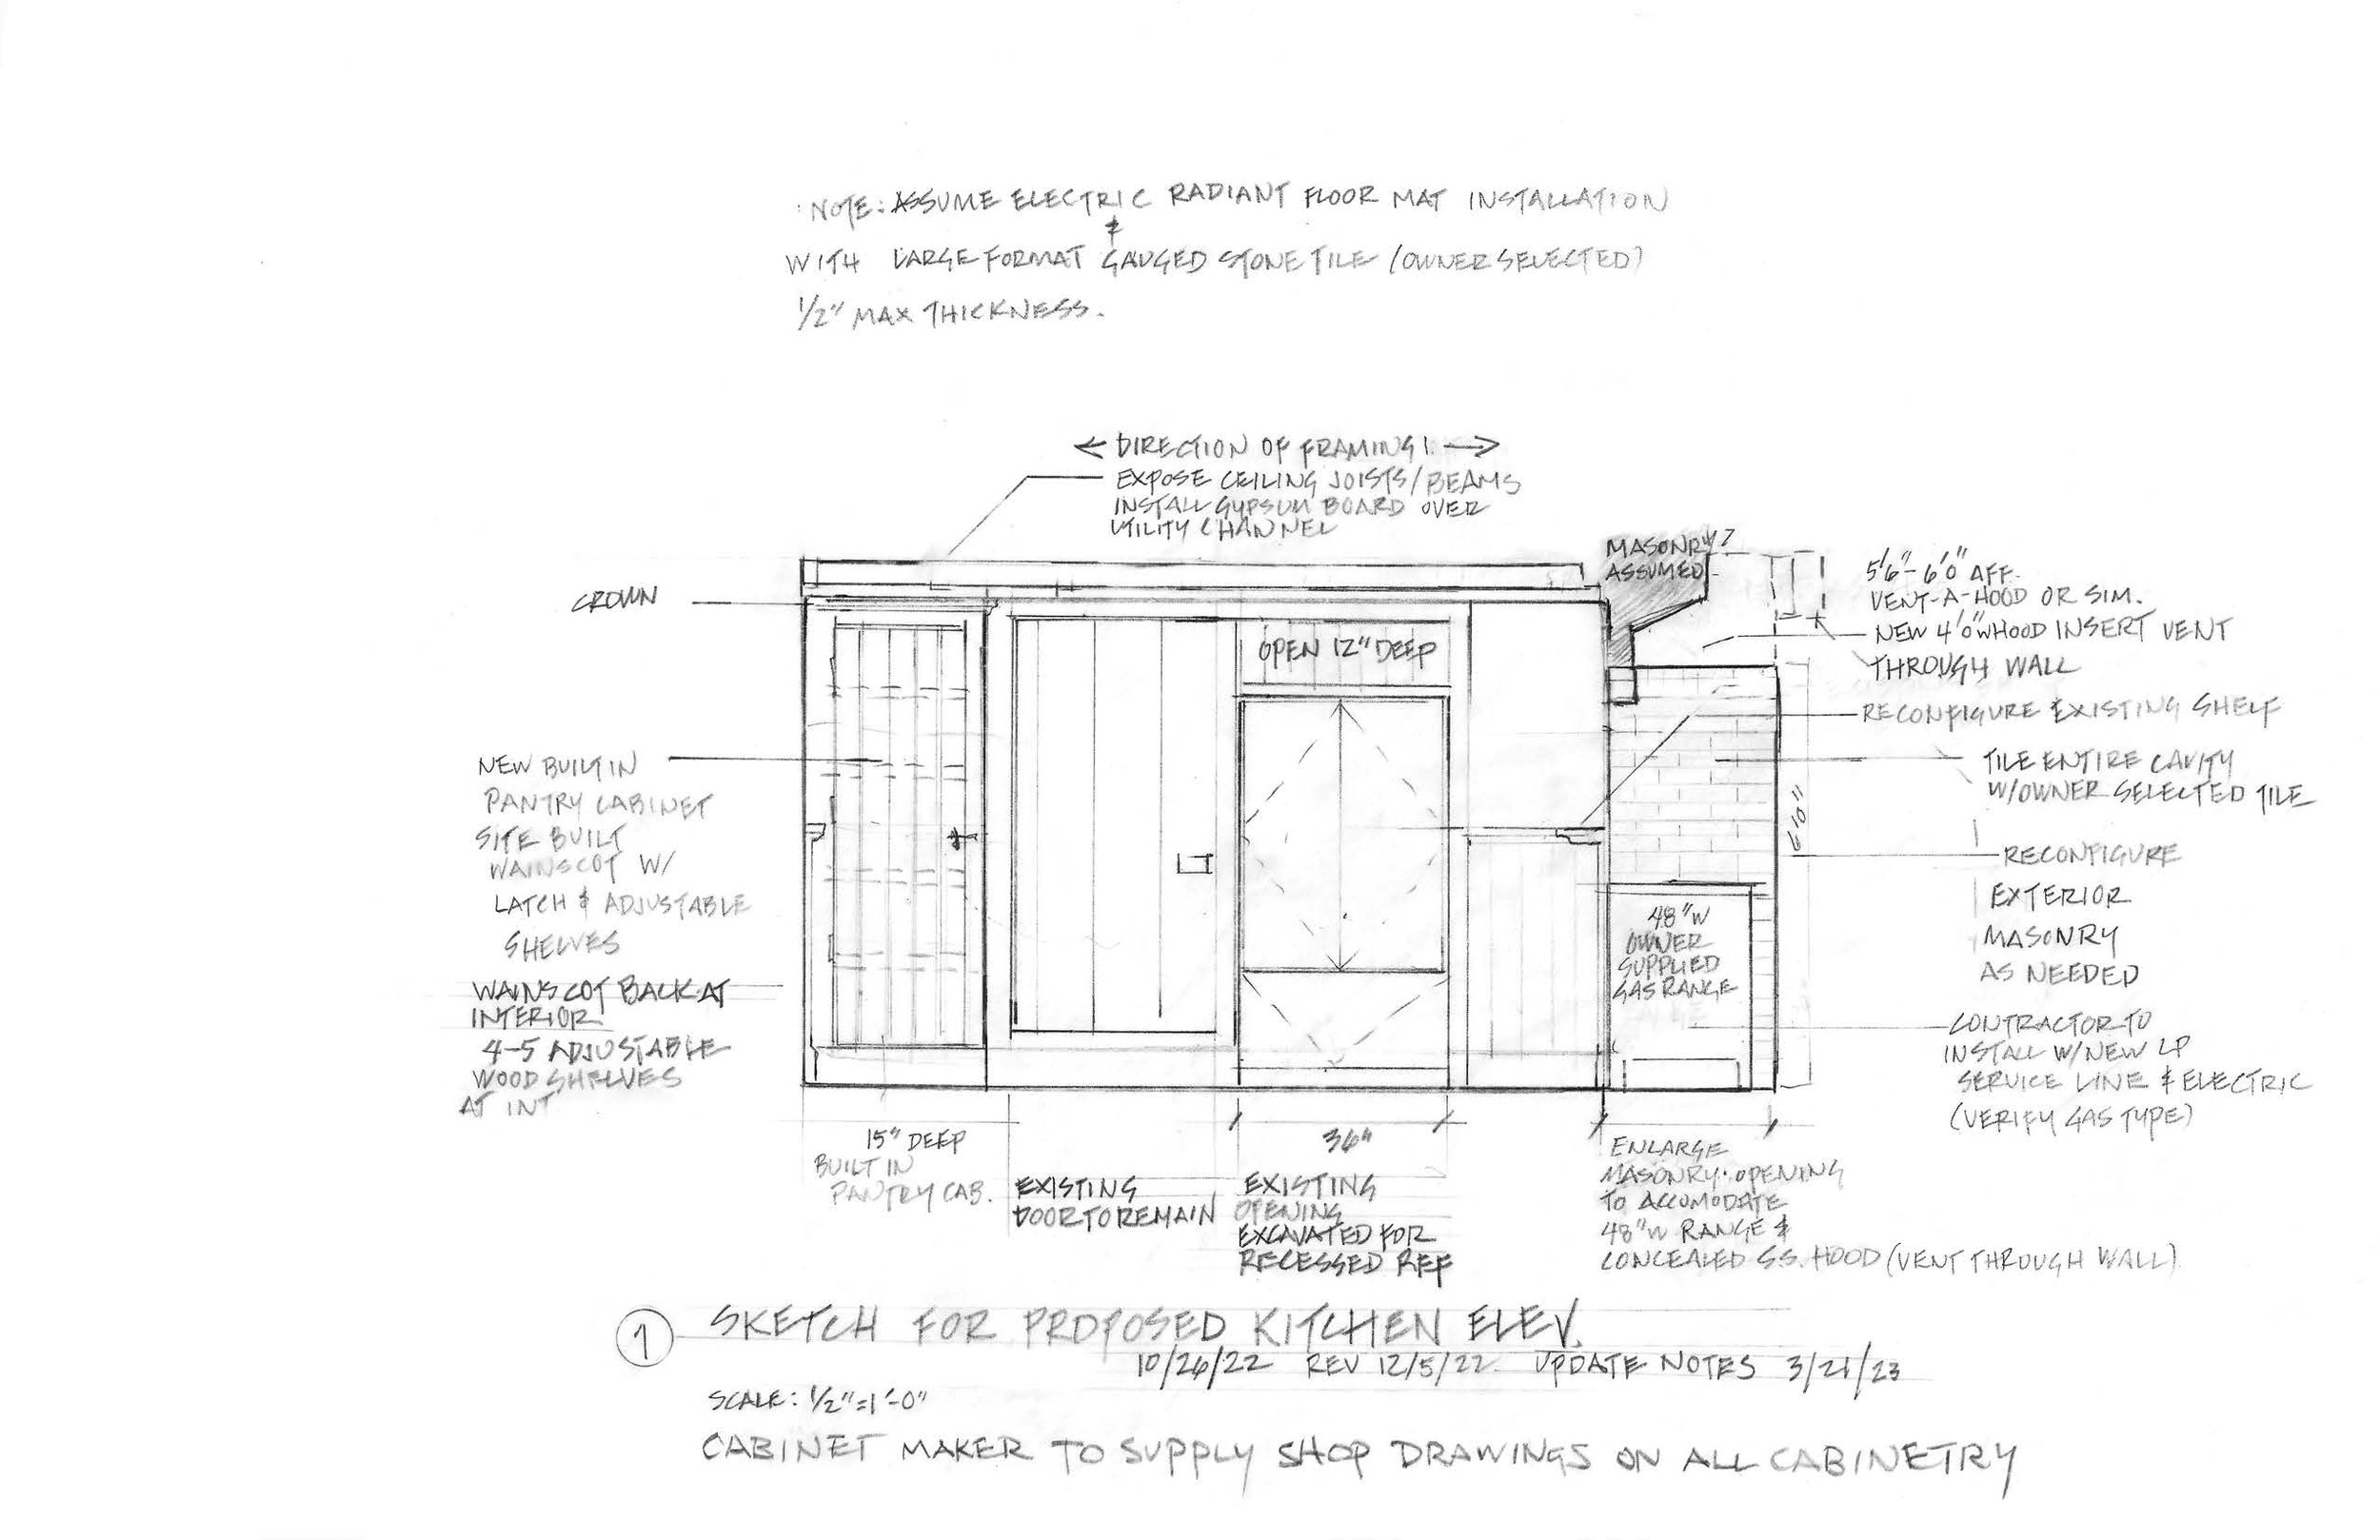 2022.10.20 1 Sketch for Proposed Kitchen Elev.jpg